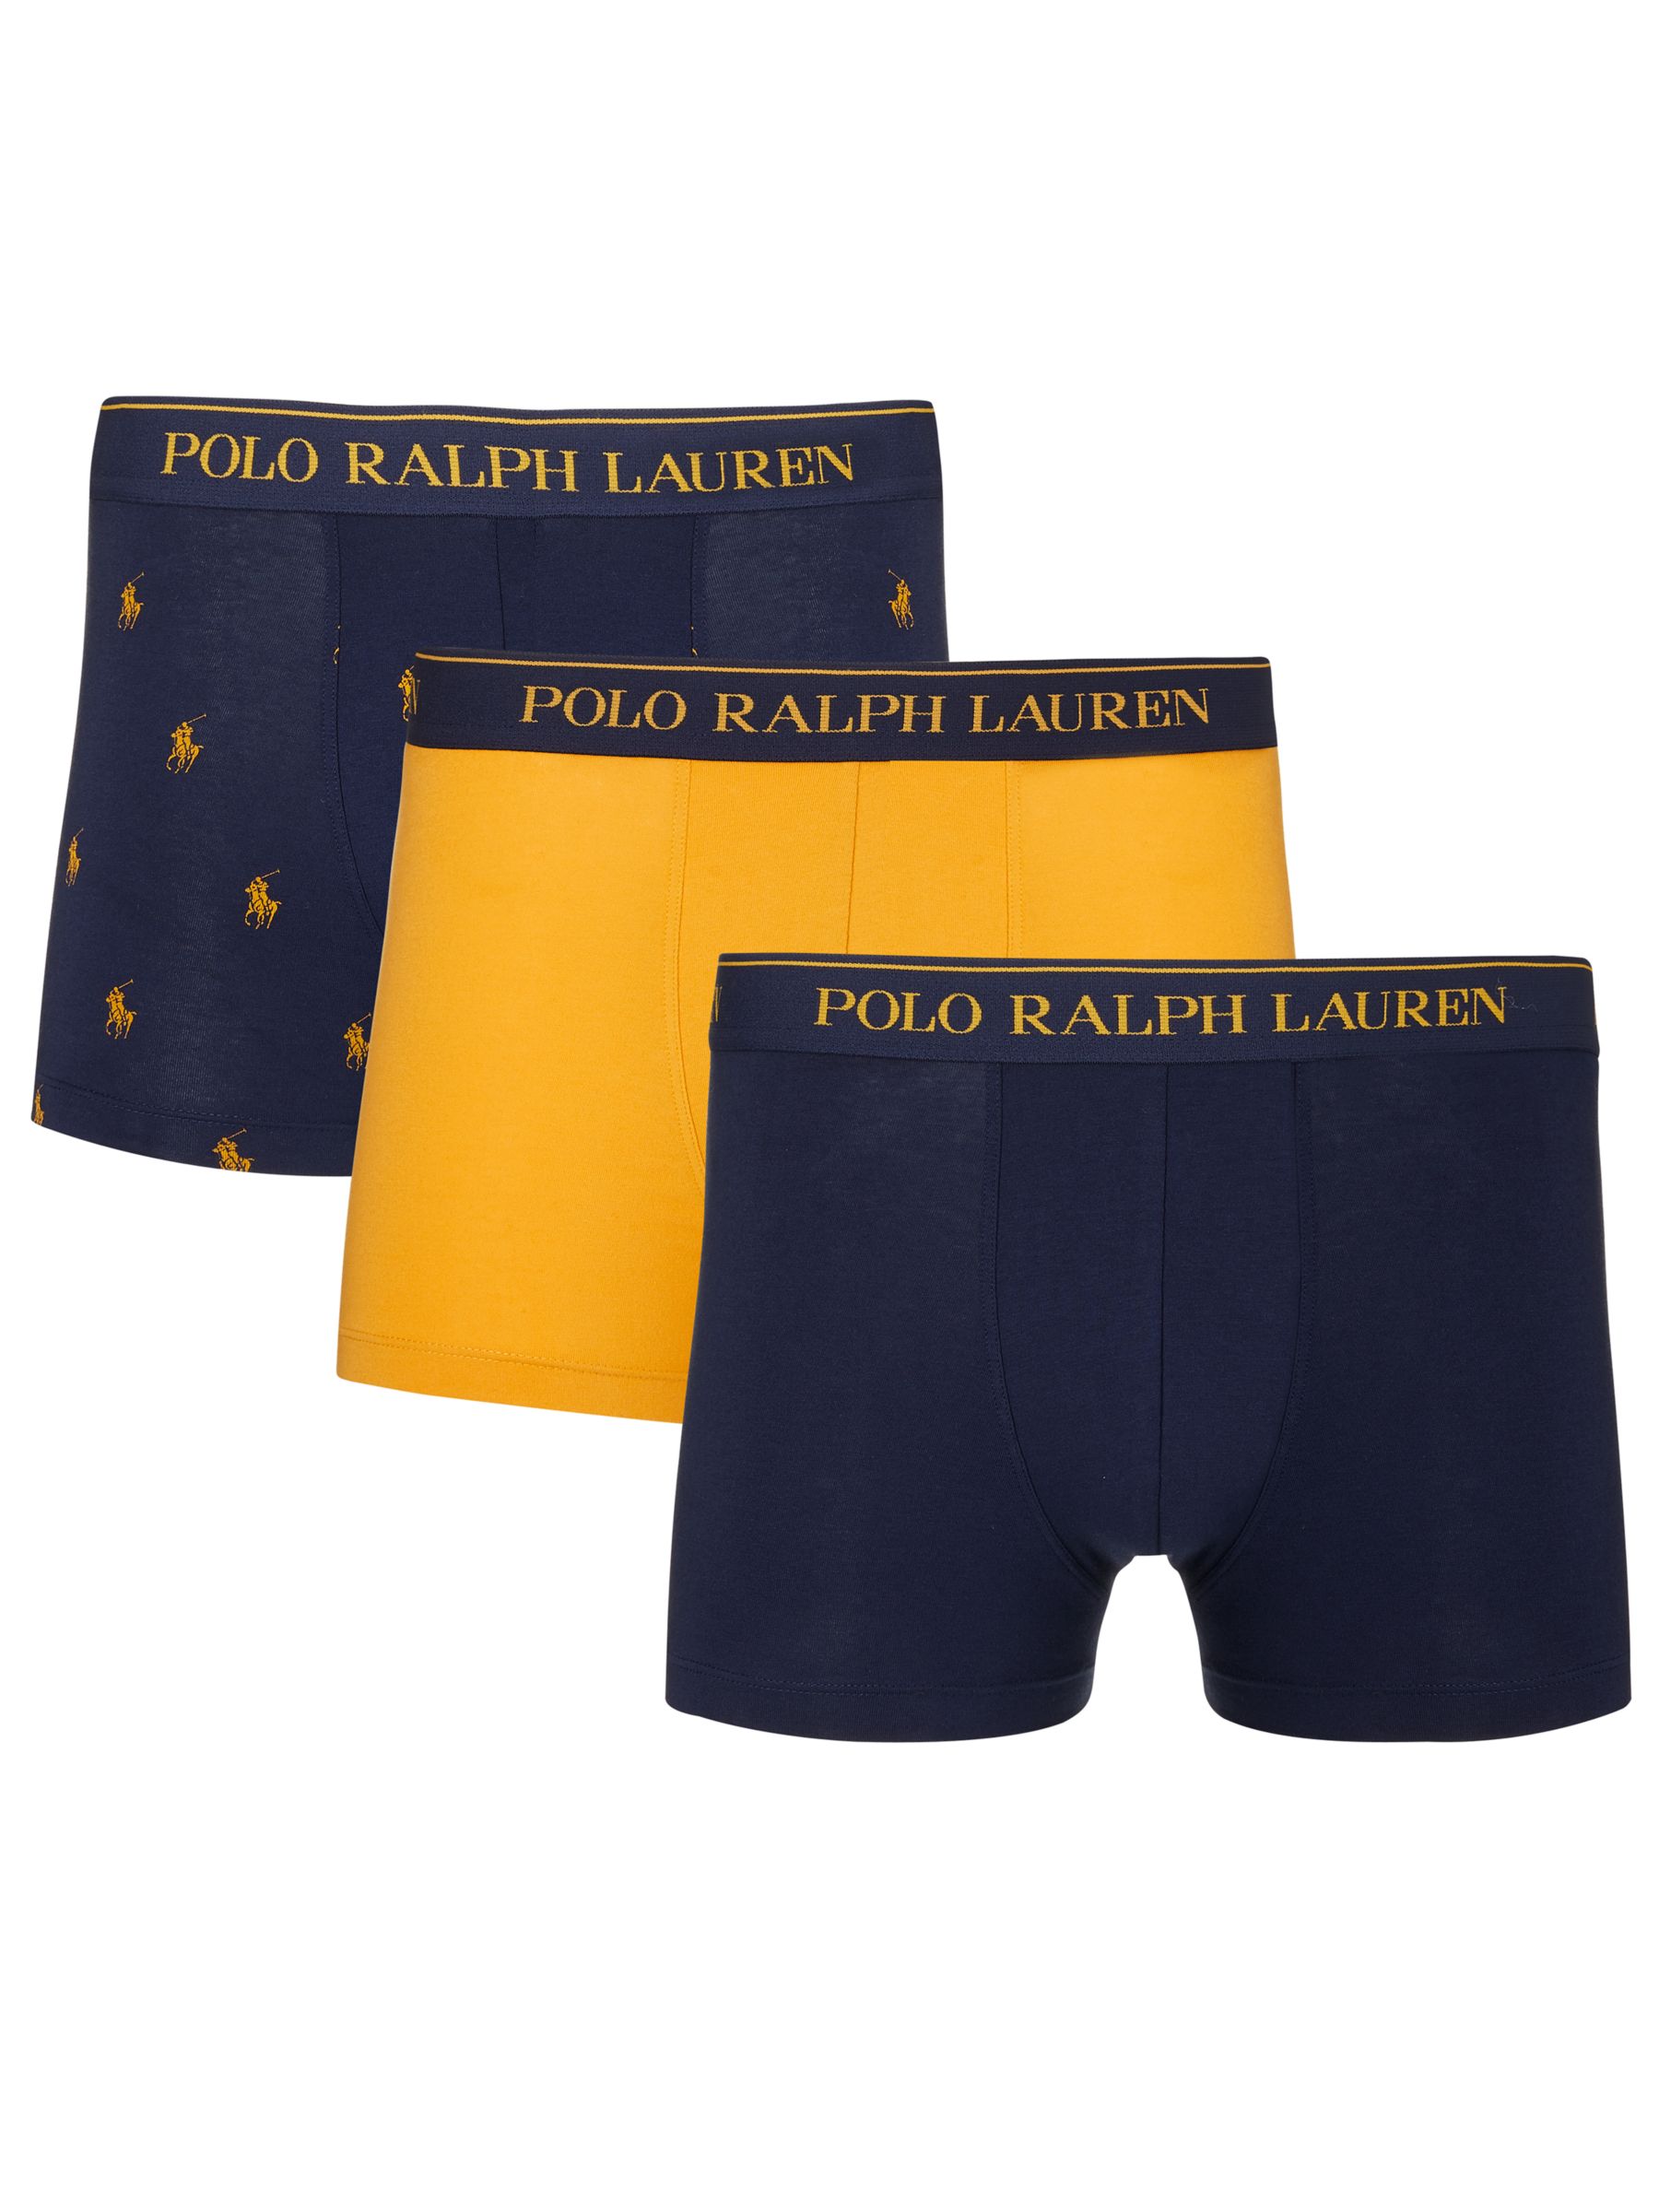 polo ralph lauren trunks in 3 pack